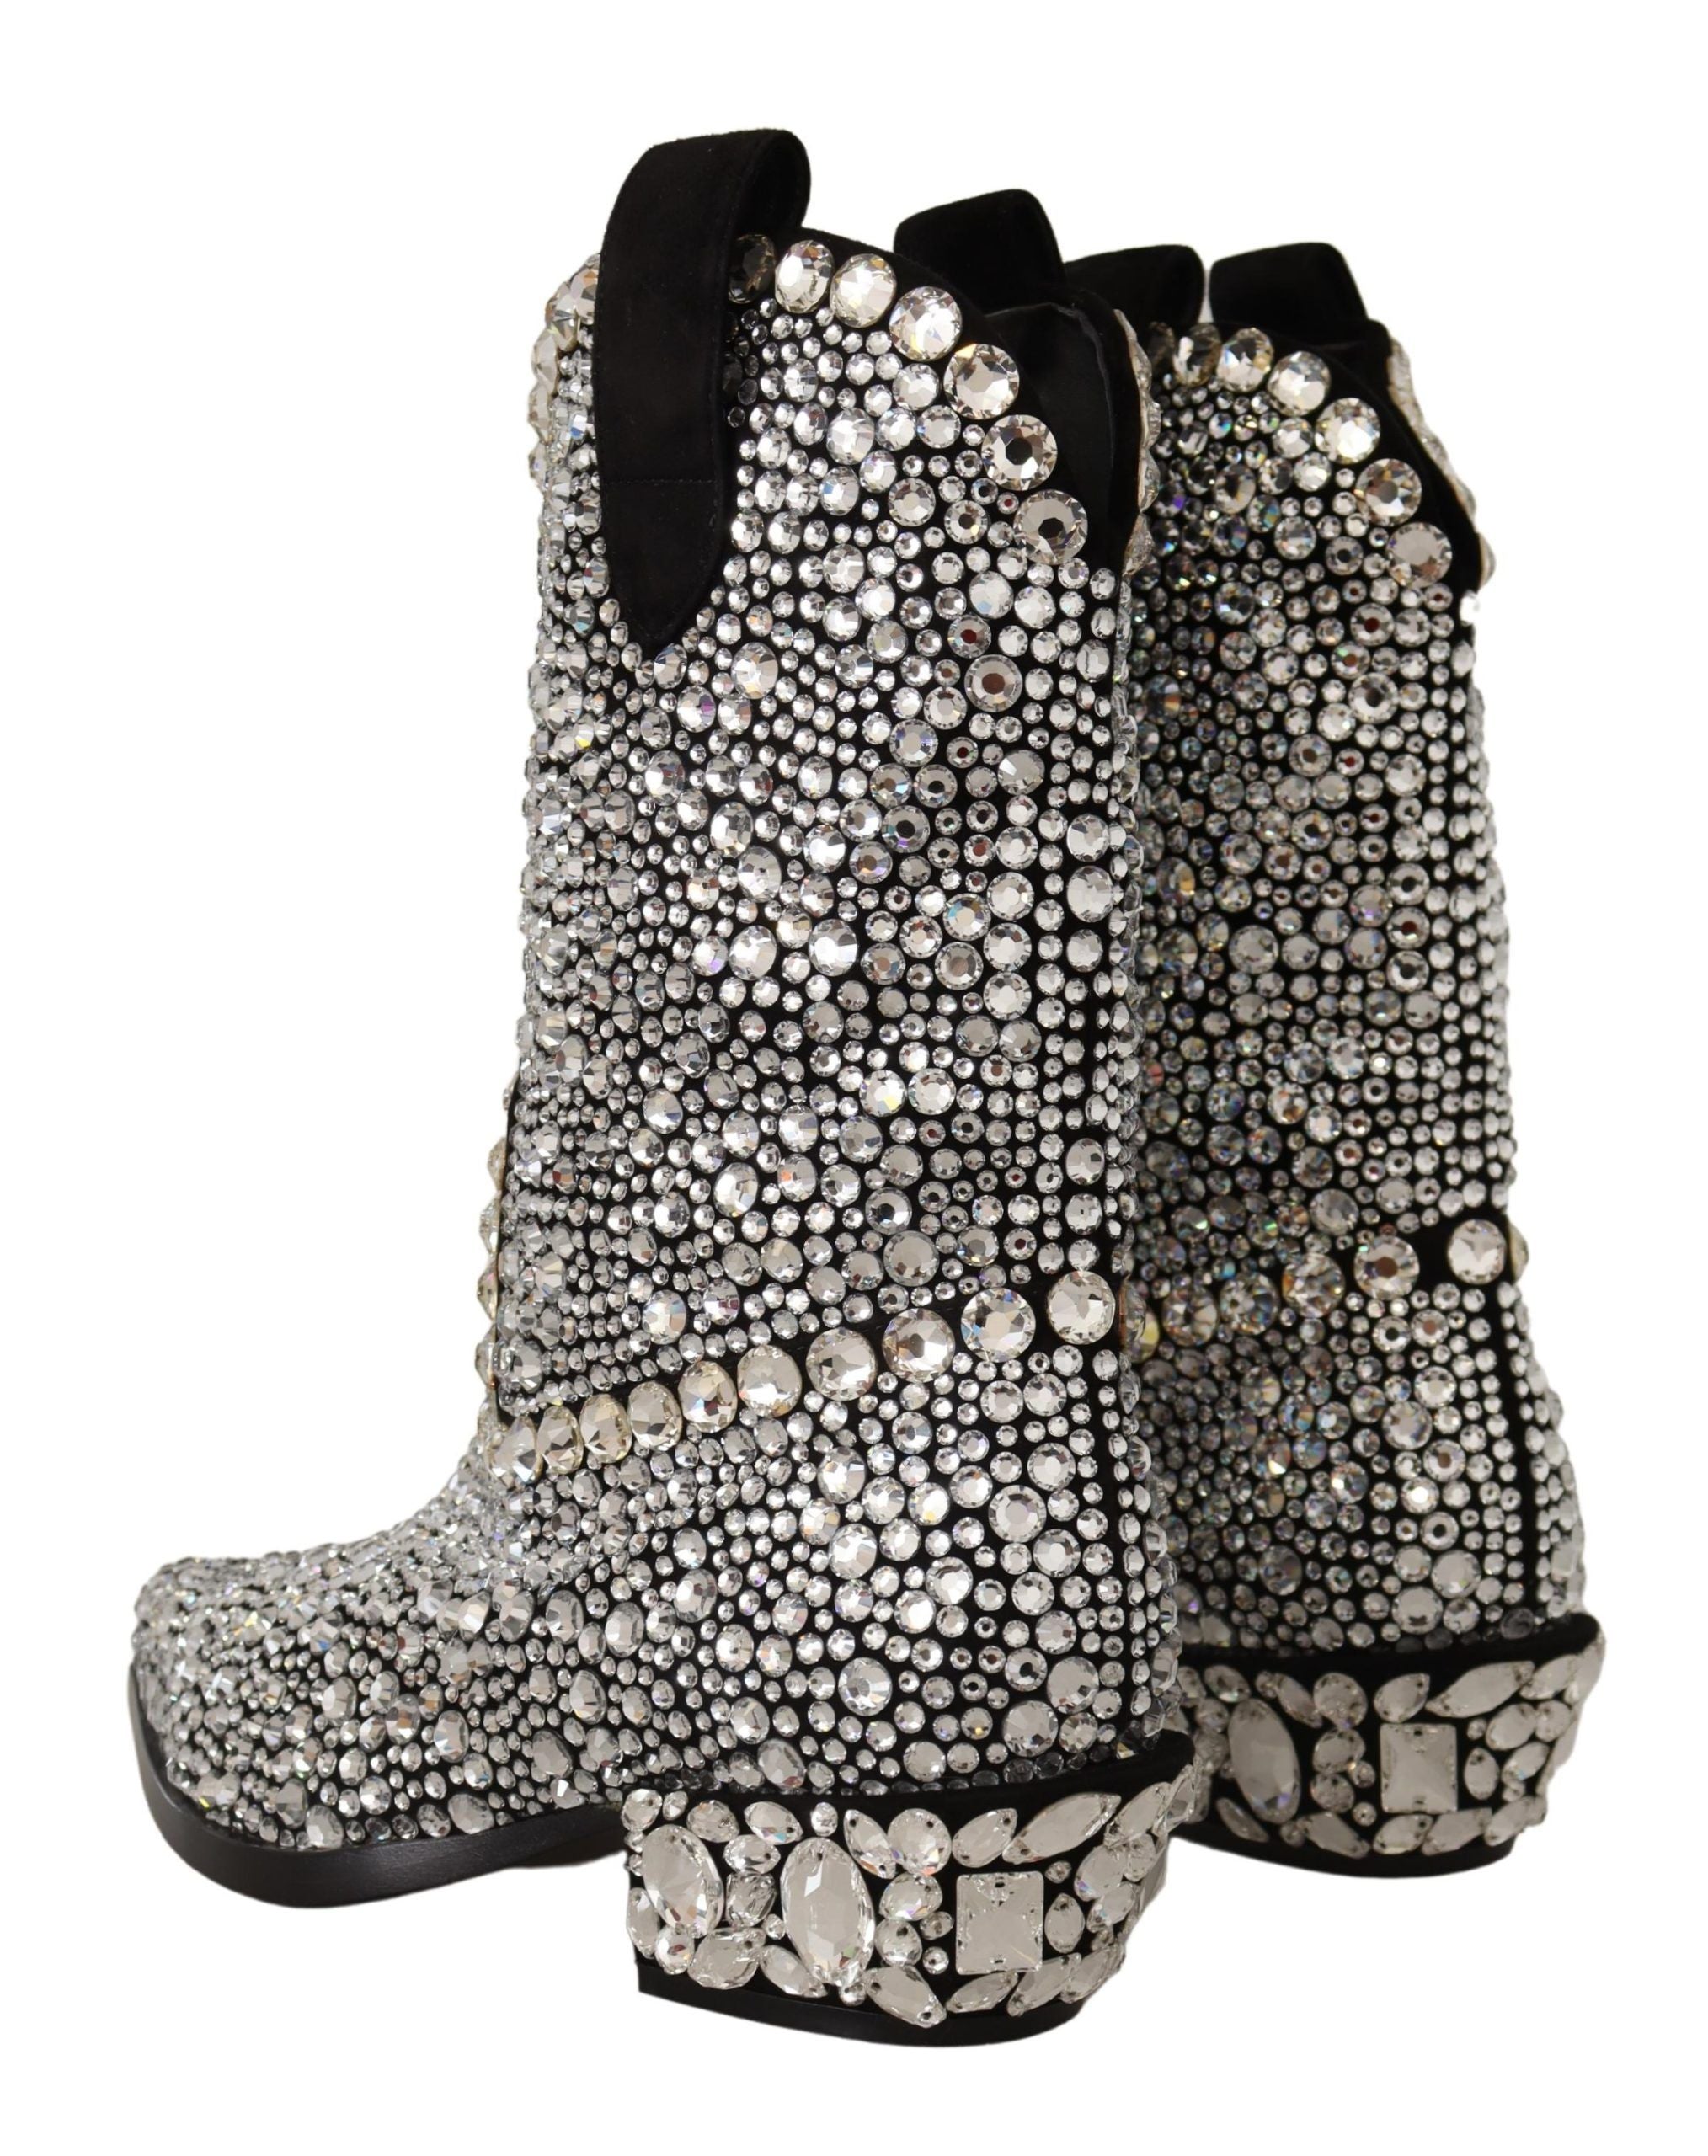 Crystal-Embellished Black Suede Boots